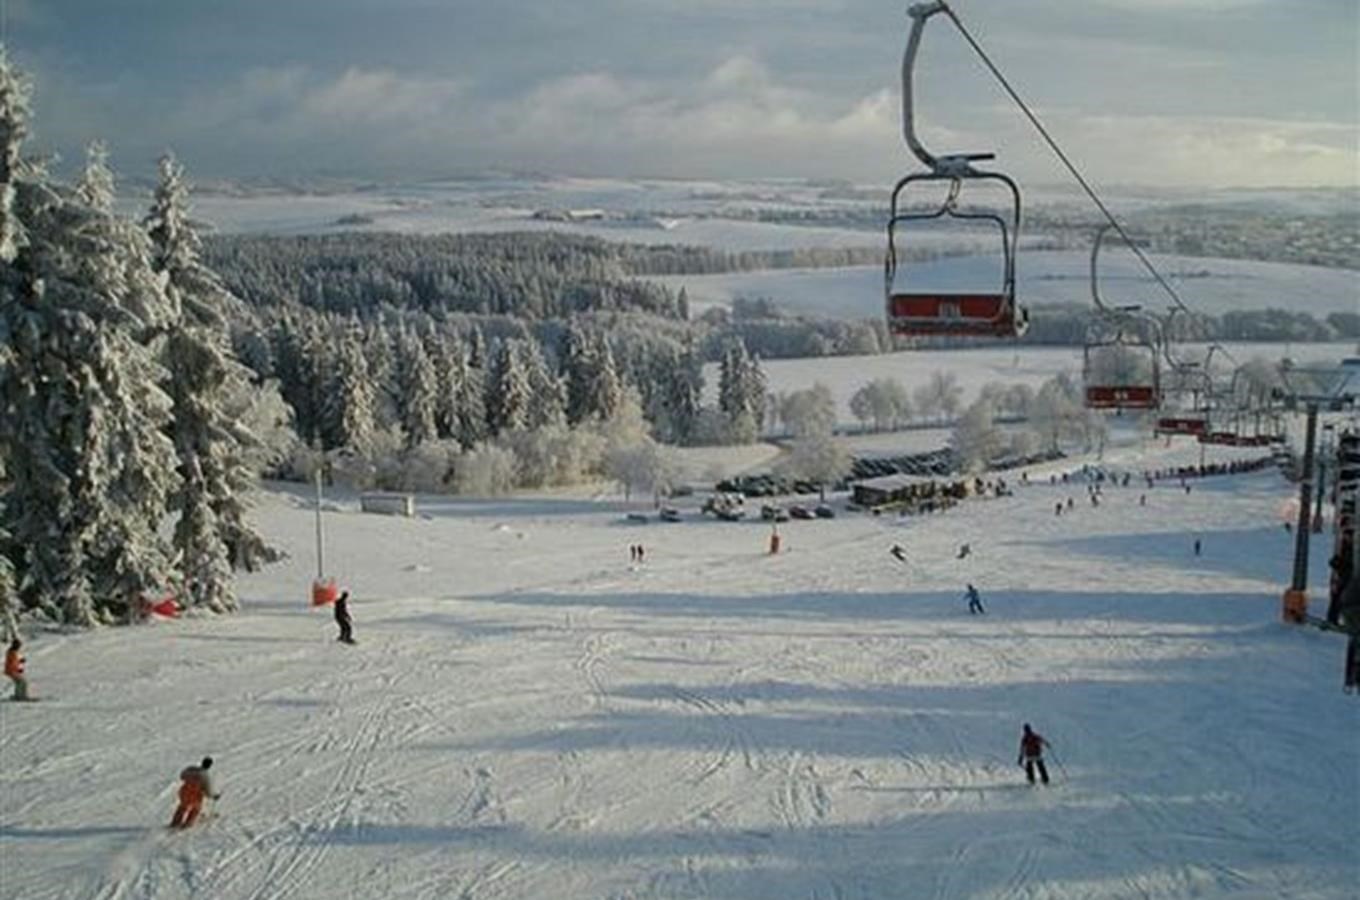 Harusův kopec - Ski Snowpark Nové Město na Moravě